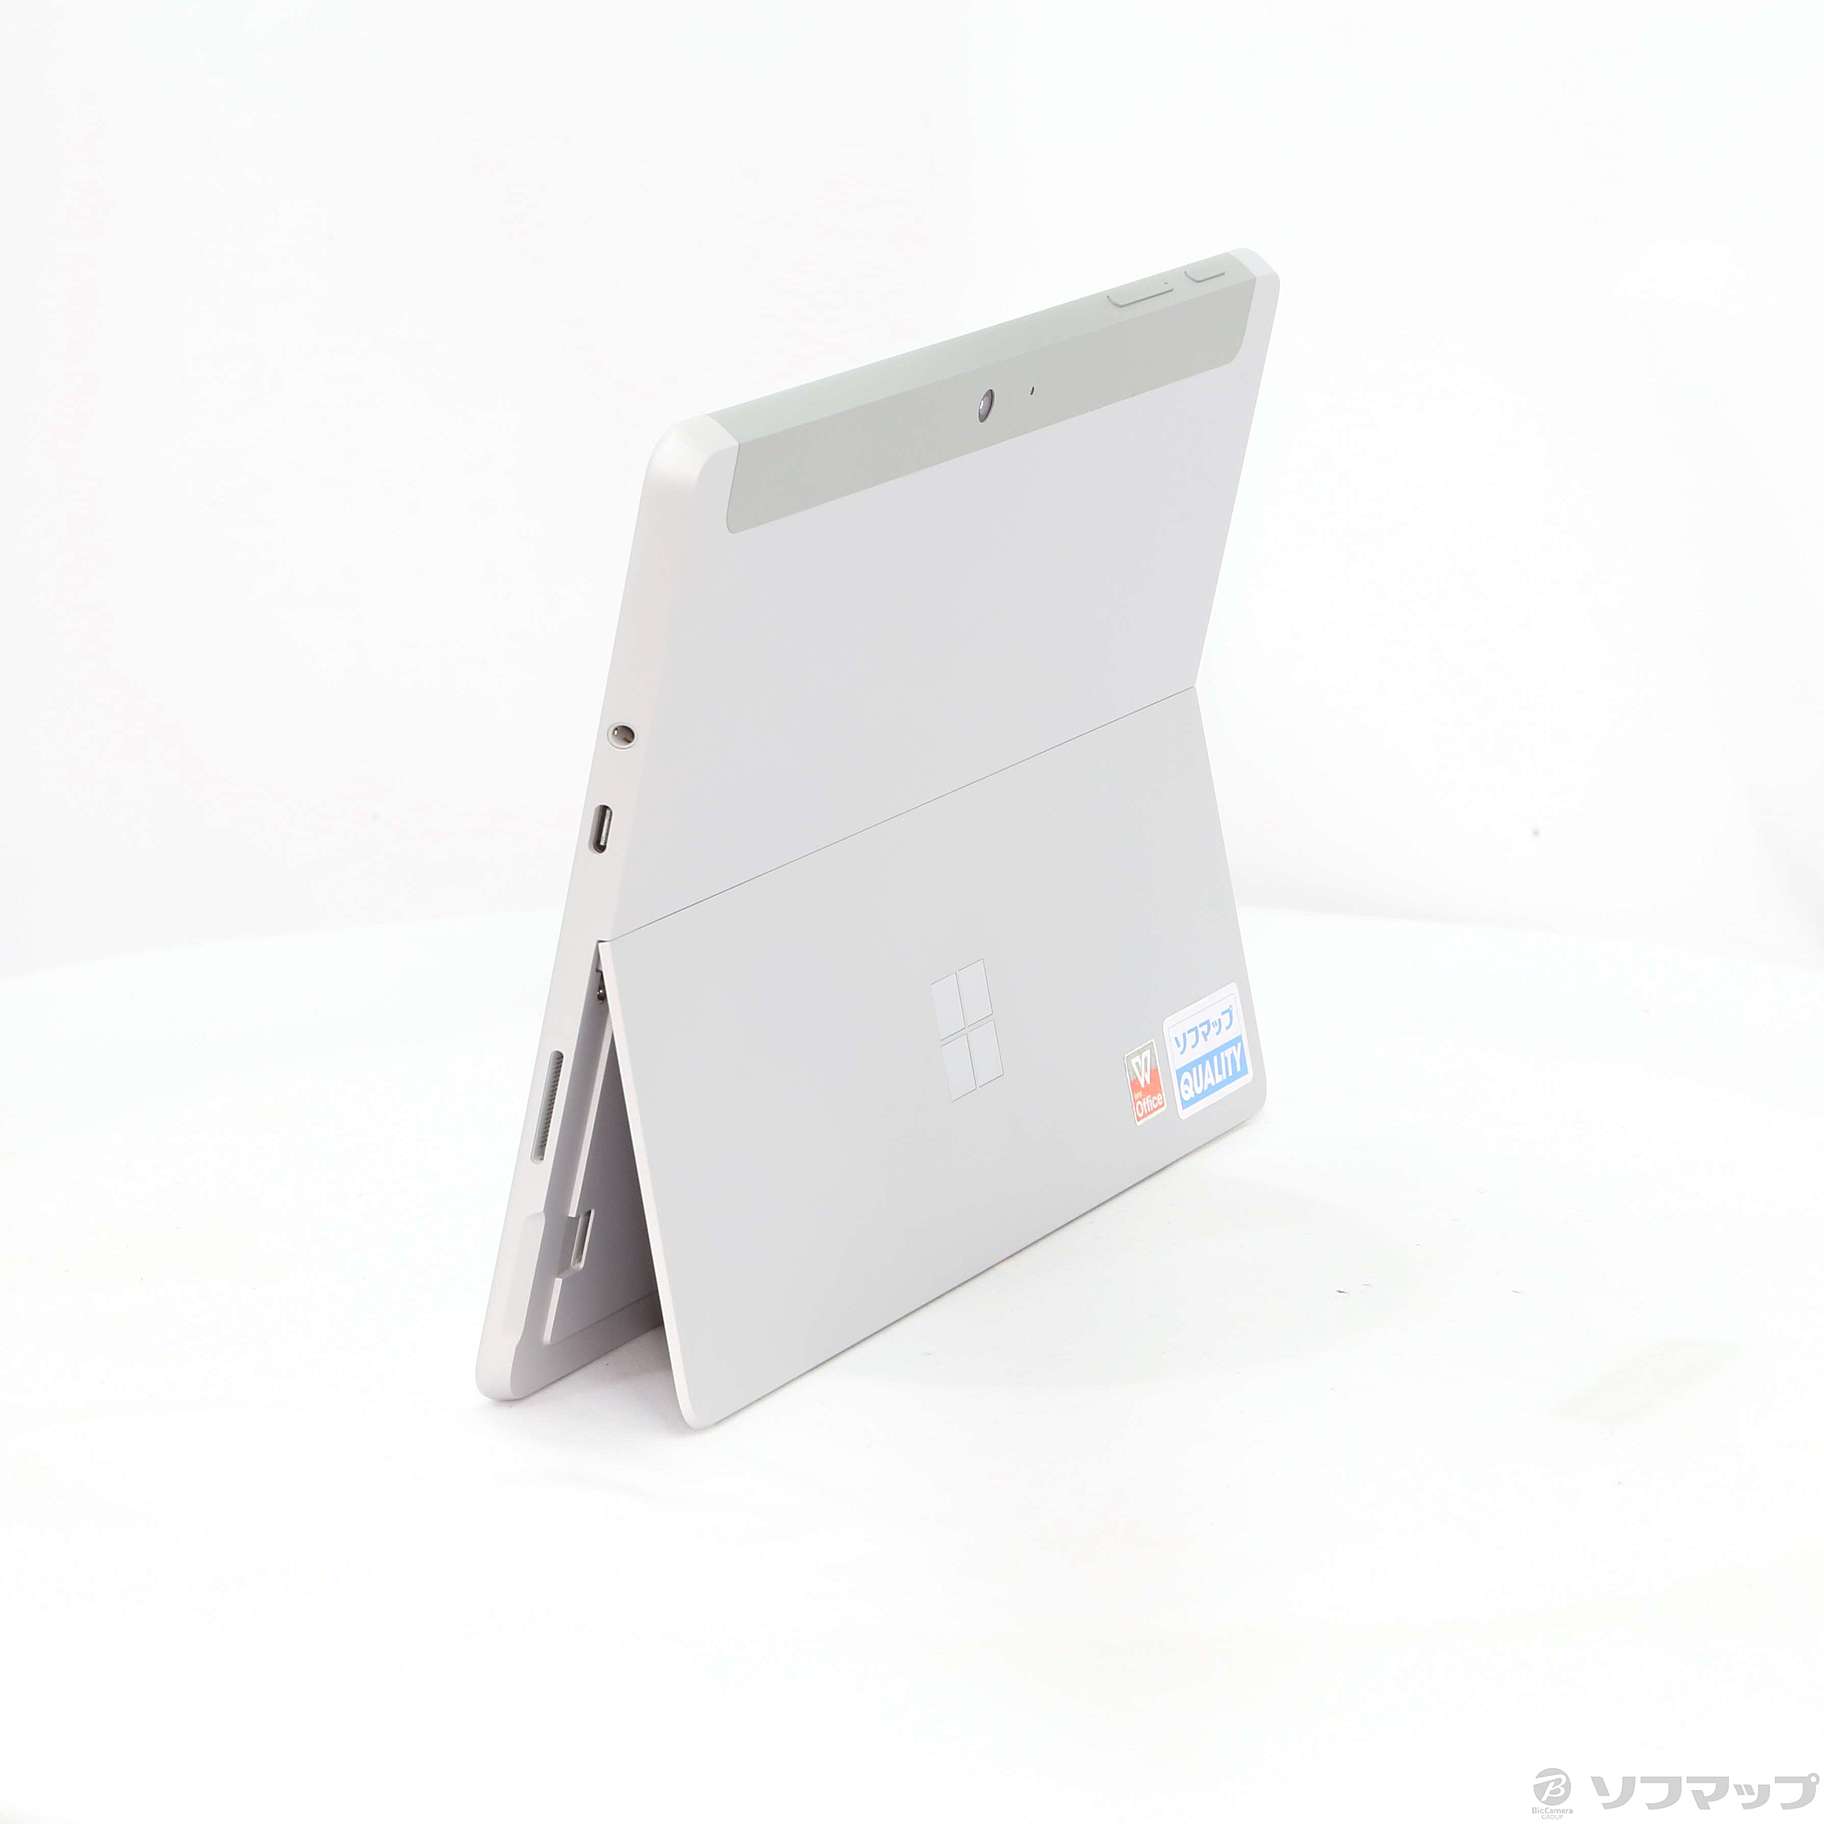 Surface Go 〔Pentium 4415Y／4GB／eMMC64GB〕 LXK-00014